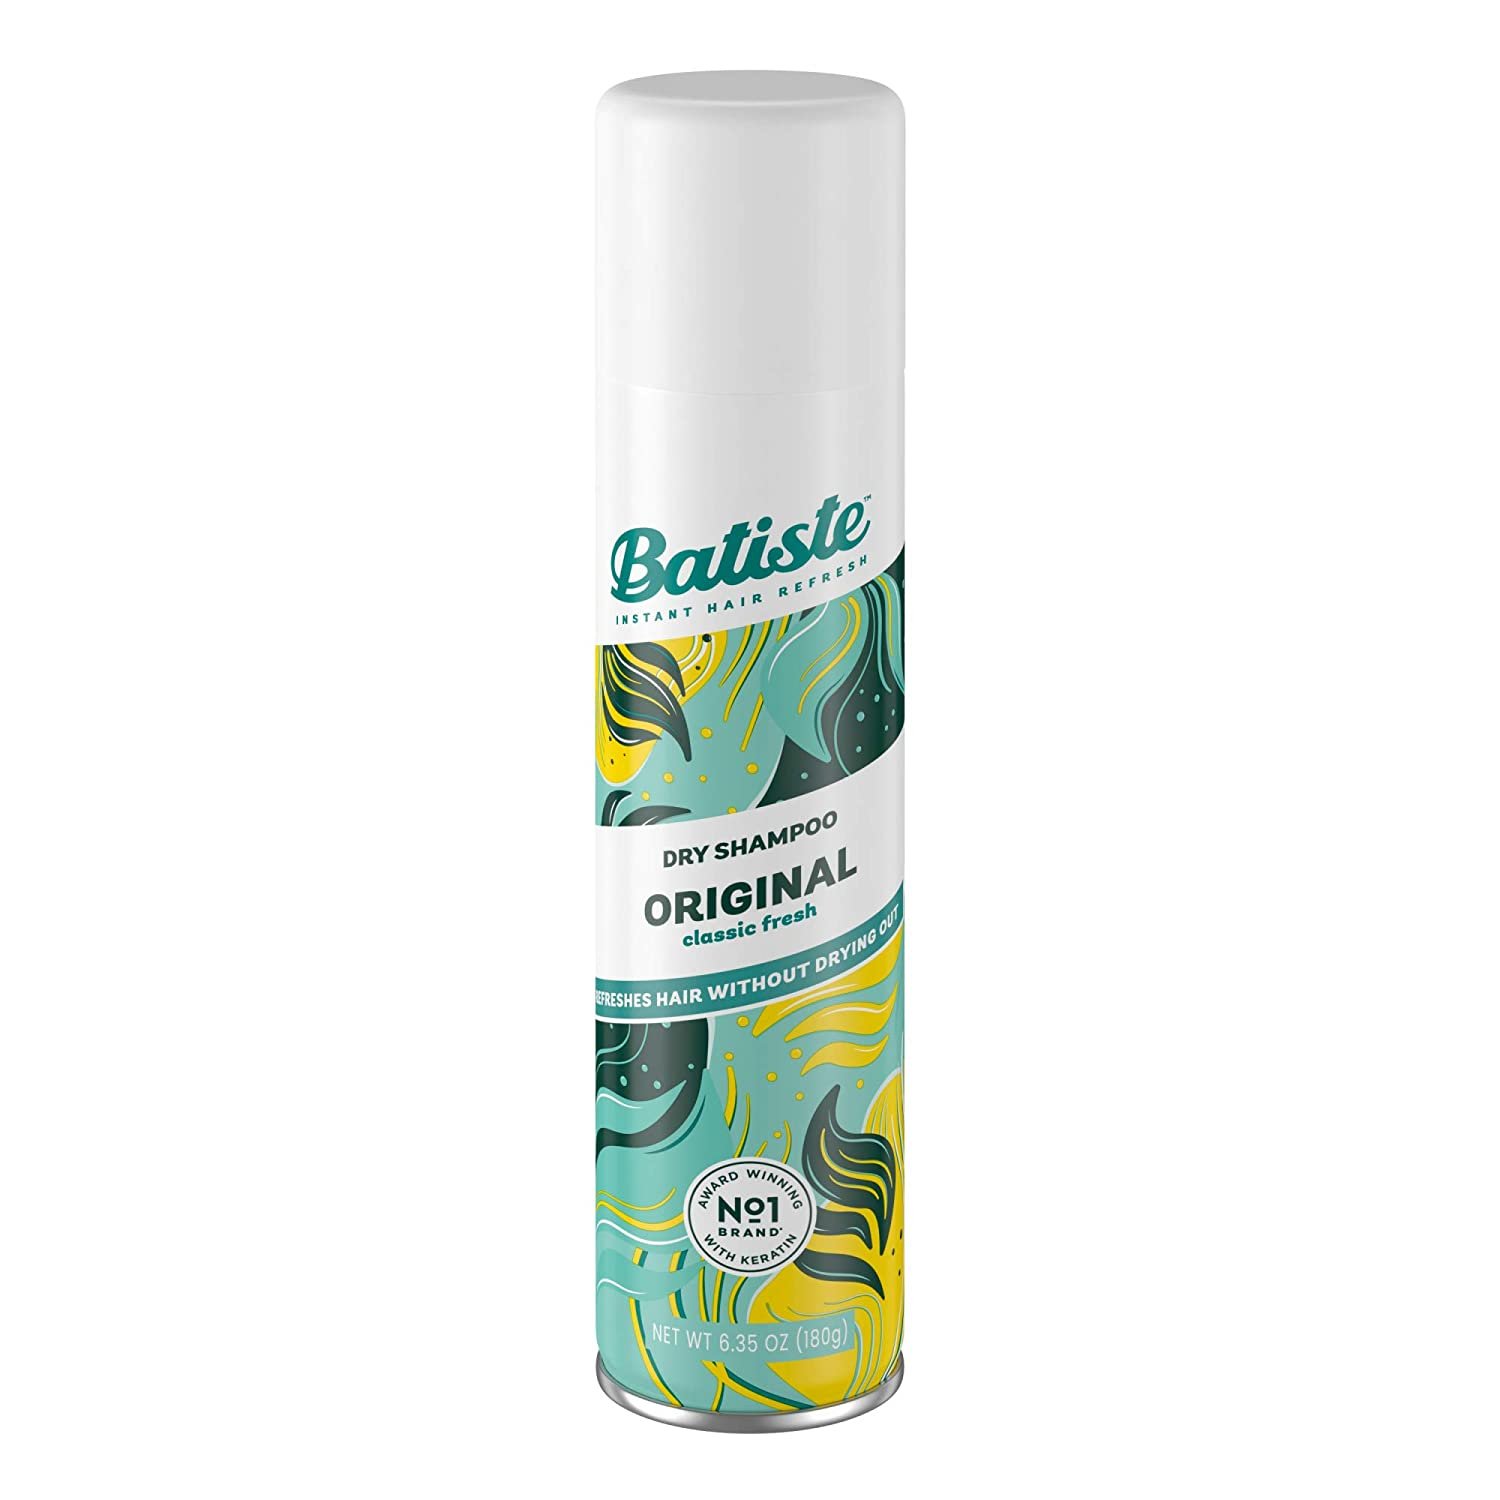 Batiste Dry Shampoo, Original Fragrance